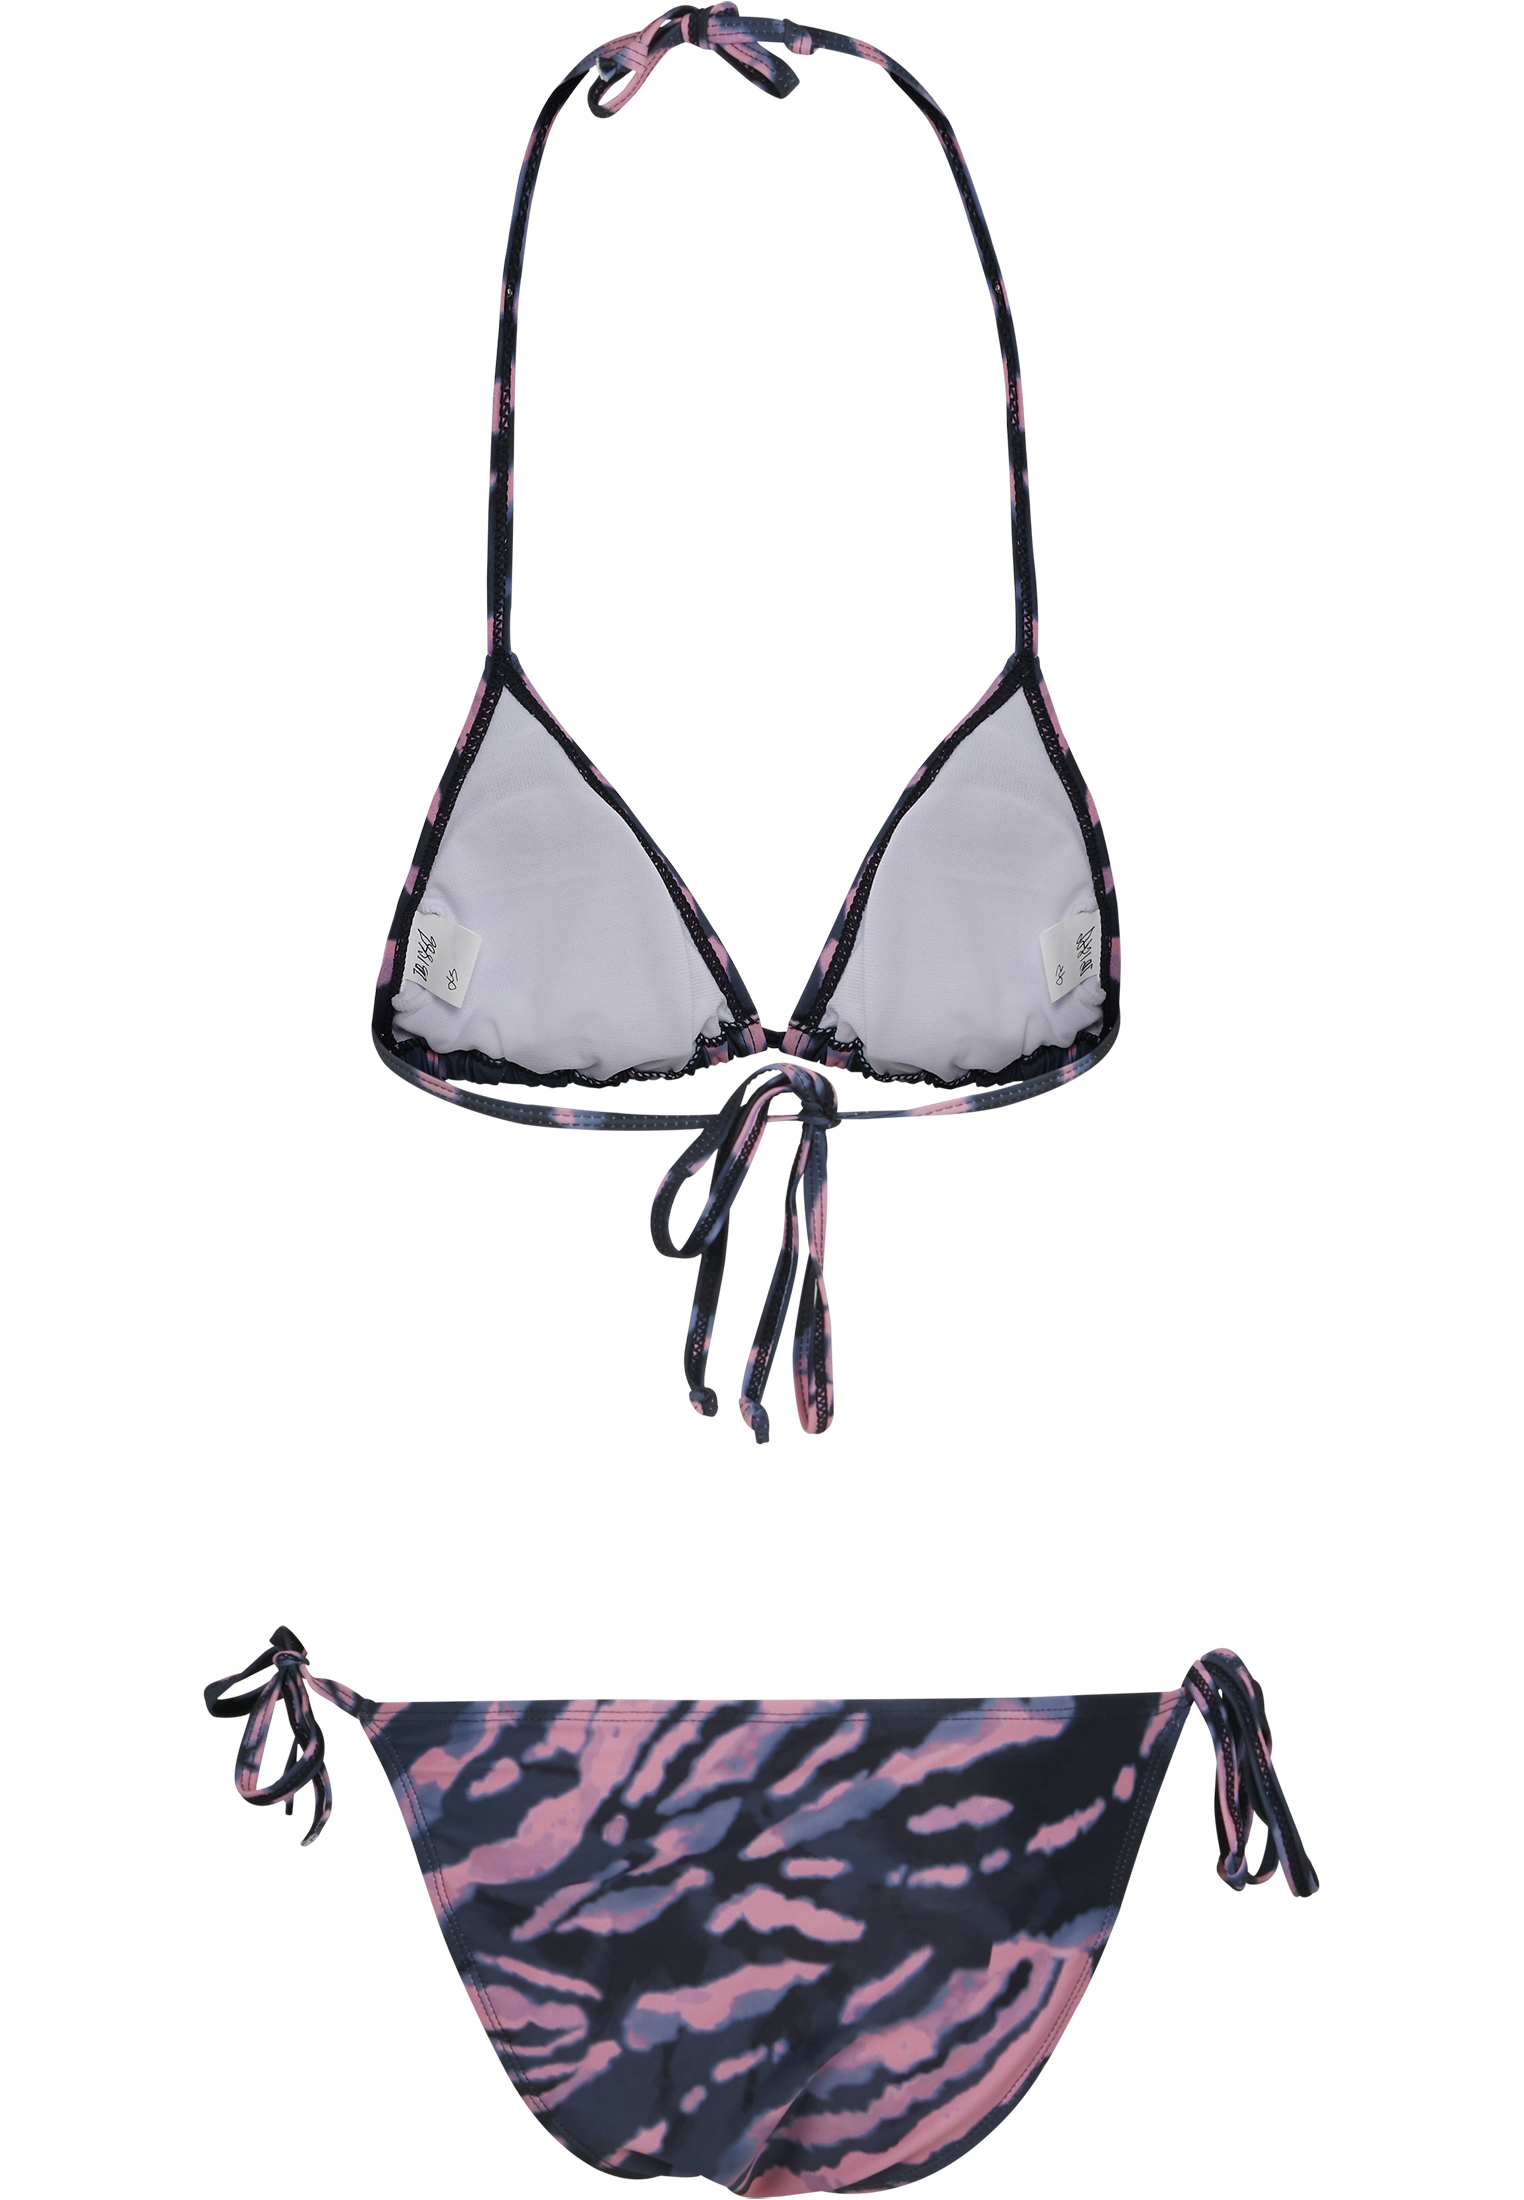 Curvy Ladies Tie Dye Bikini in Farbe darkshadow/pink